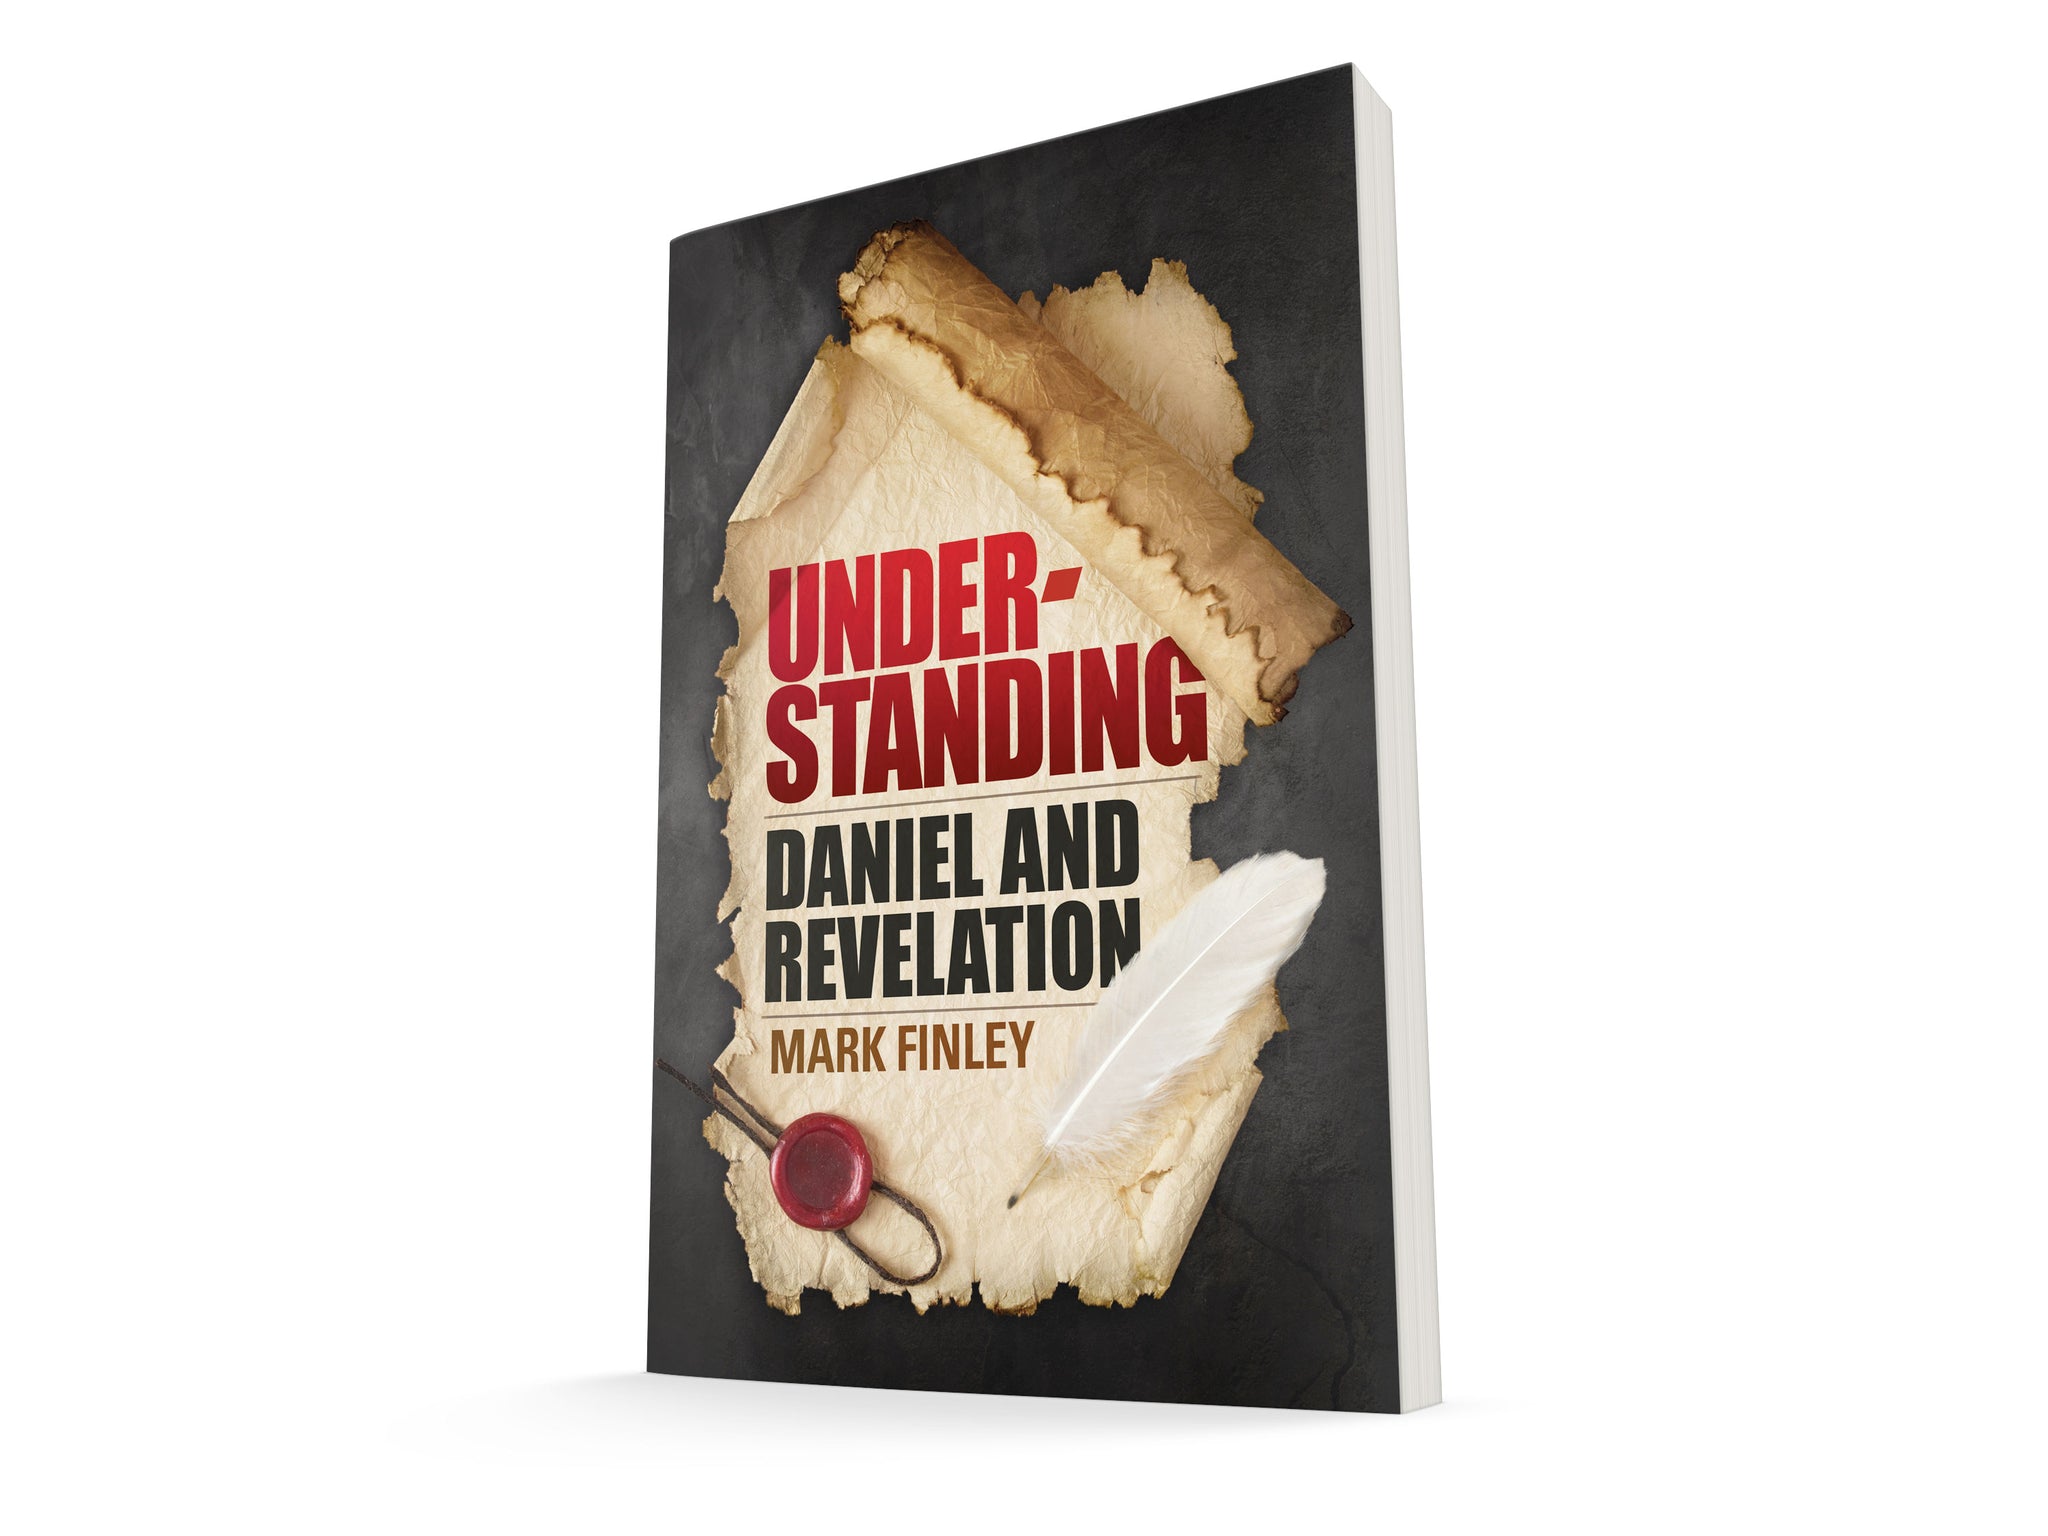 Understanding Daniel & Revelation